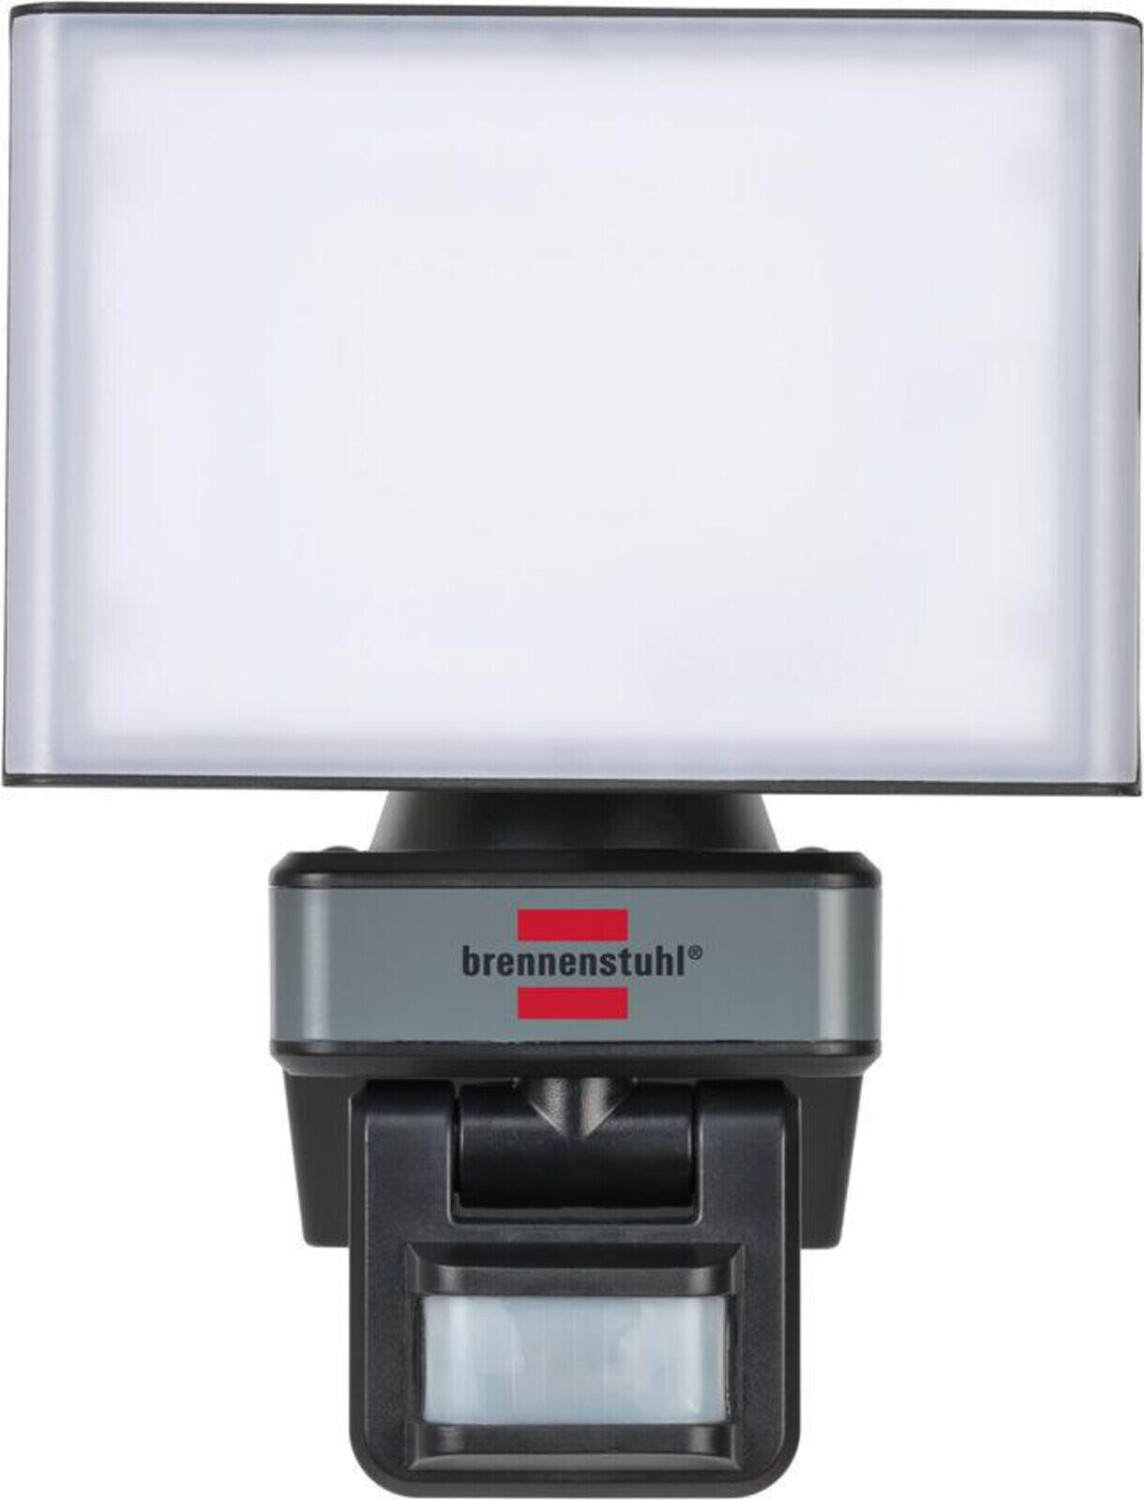 Brennenstuhl Connect Preisvergleich (1179050010) P 43,33 € mit WF 2050 bei LED-Strahler Bewegungsmelder ab WiFi 